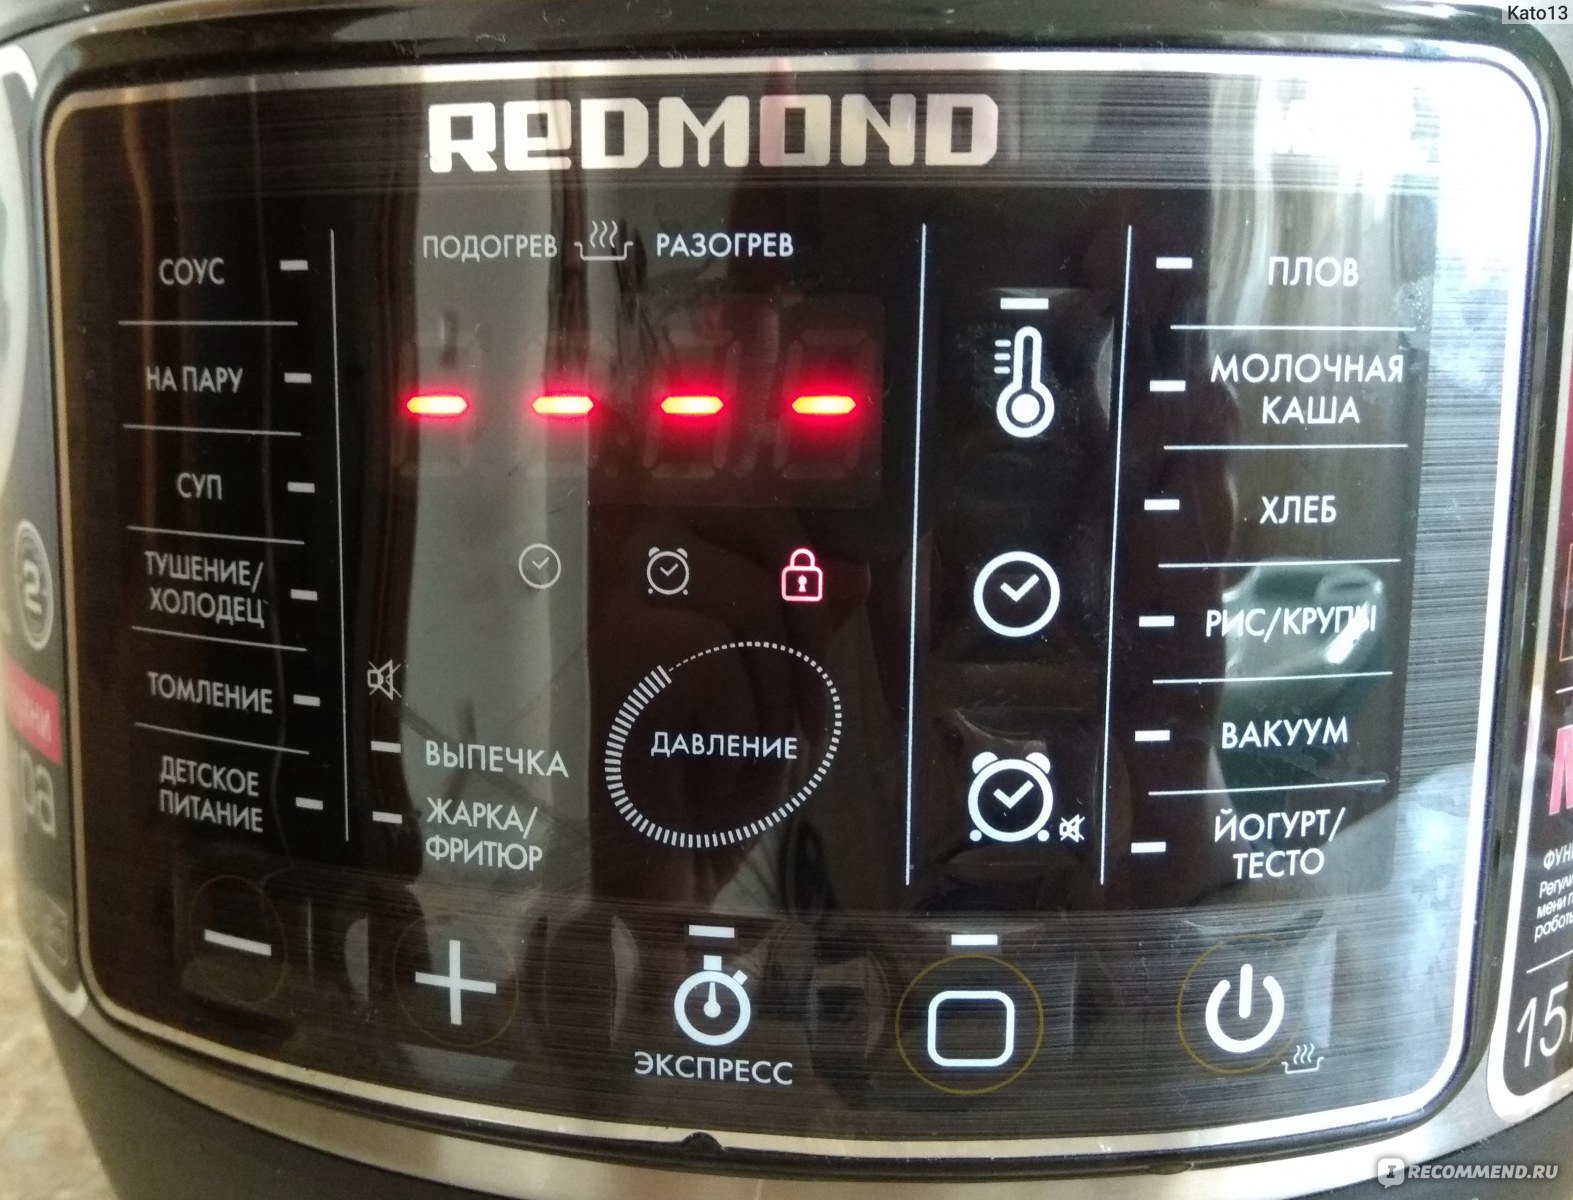 Как приготовить картошку в мультиварке redmond rmc-m170